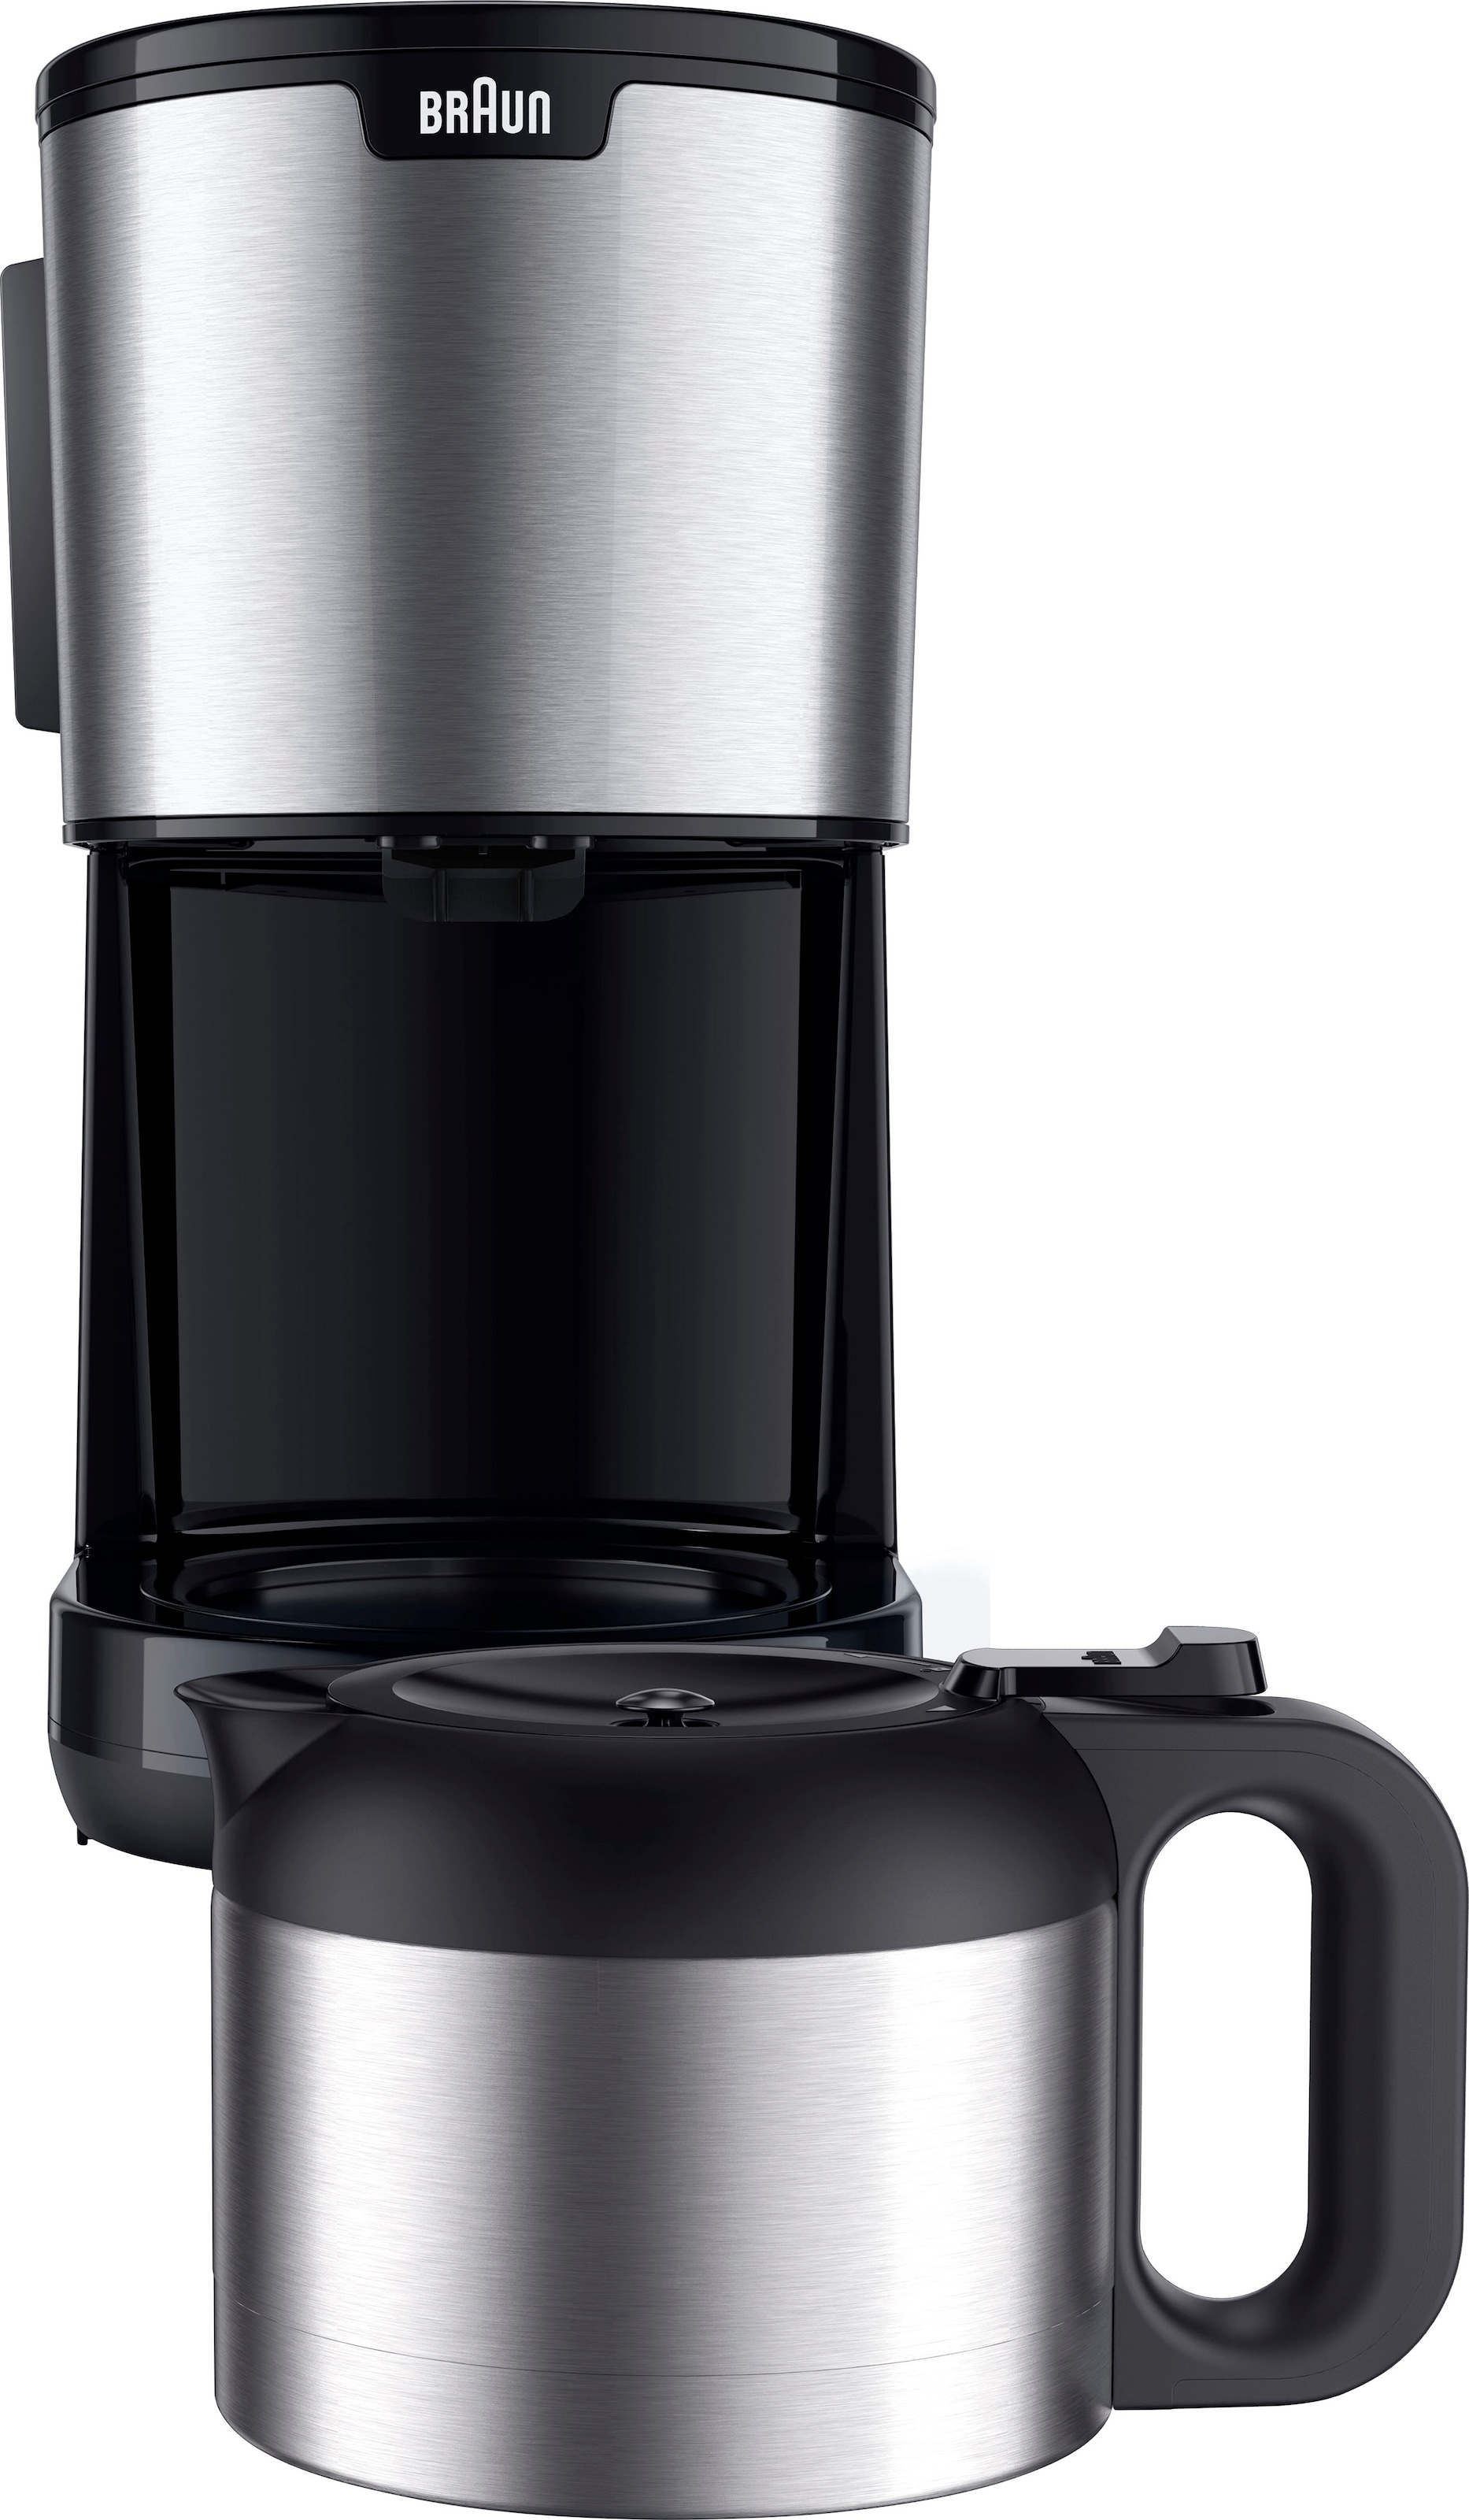 Braun Filterkaffeemaschine »PurShine bei l jetzt BK«, Kaffeekanne, Papierfilter, Thermokanne kaufen KF1505 OTTO 1,2 schwarz